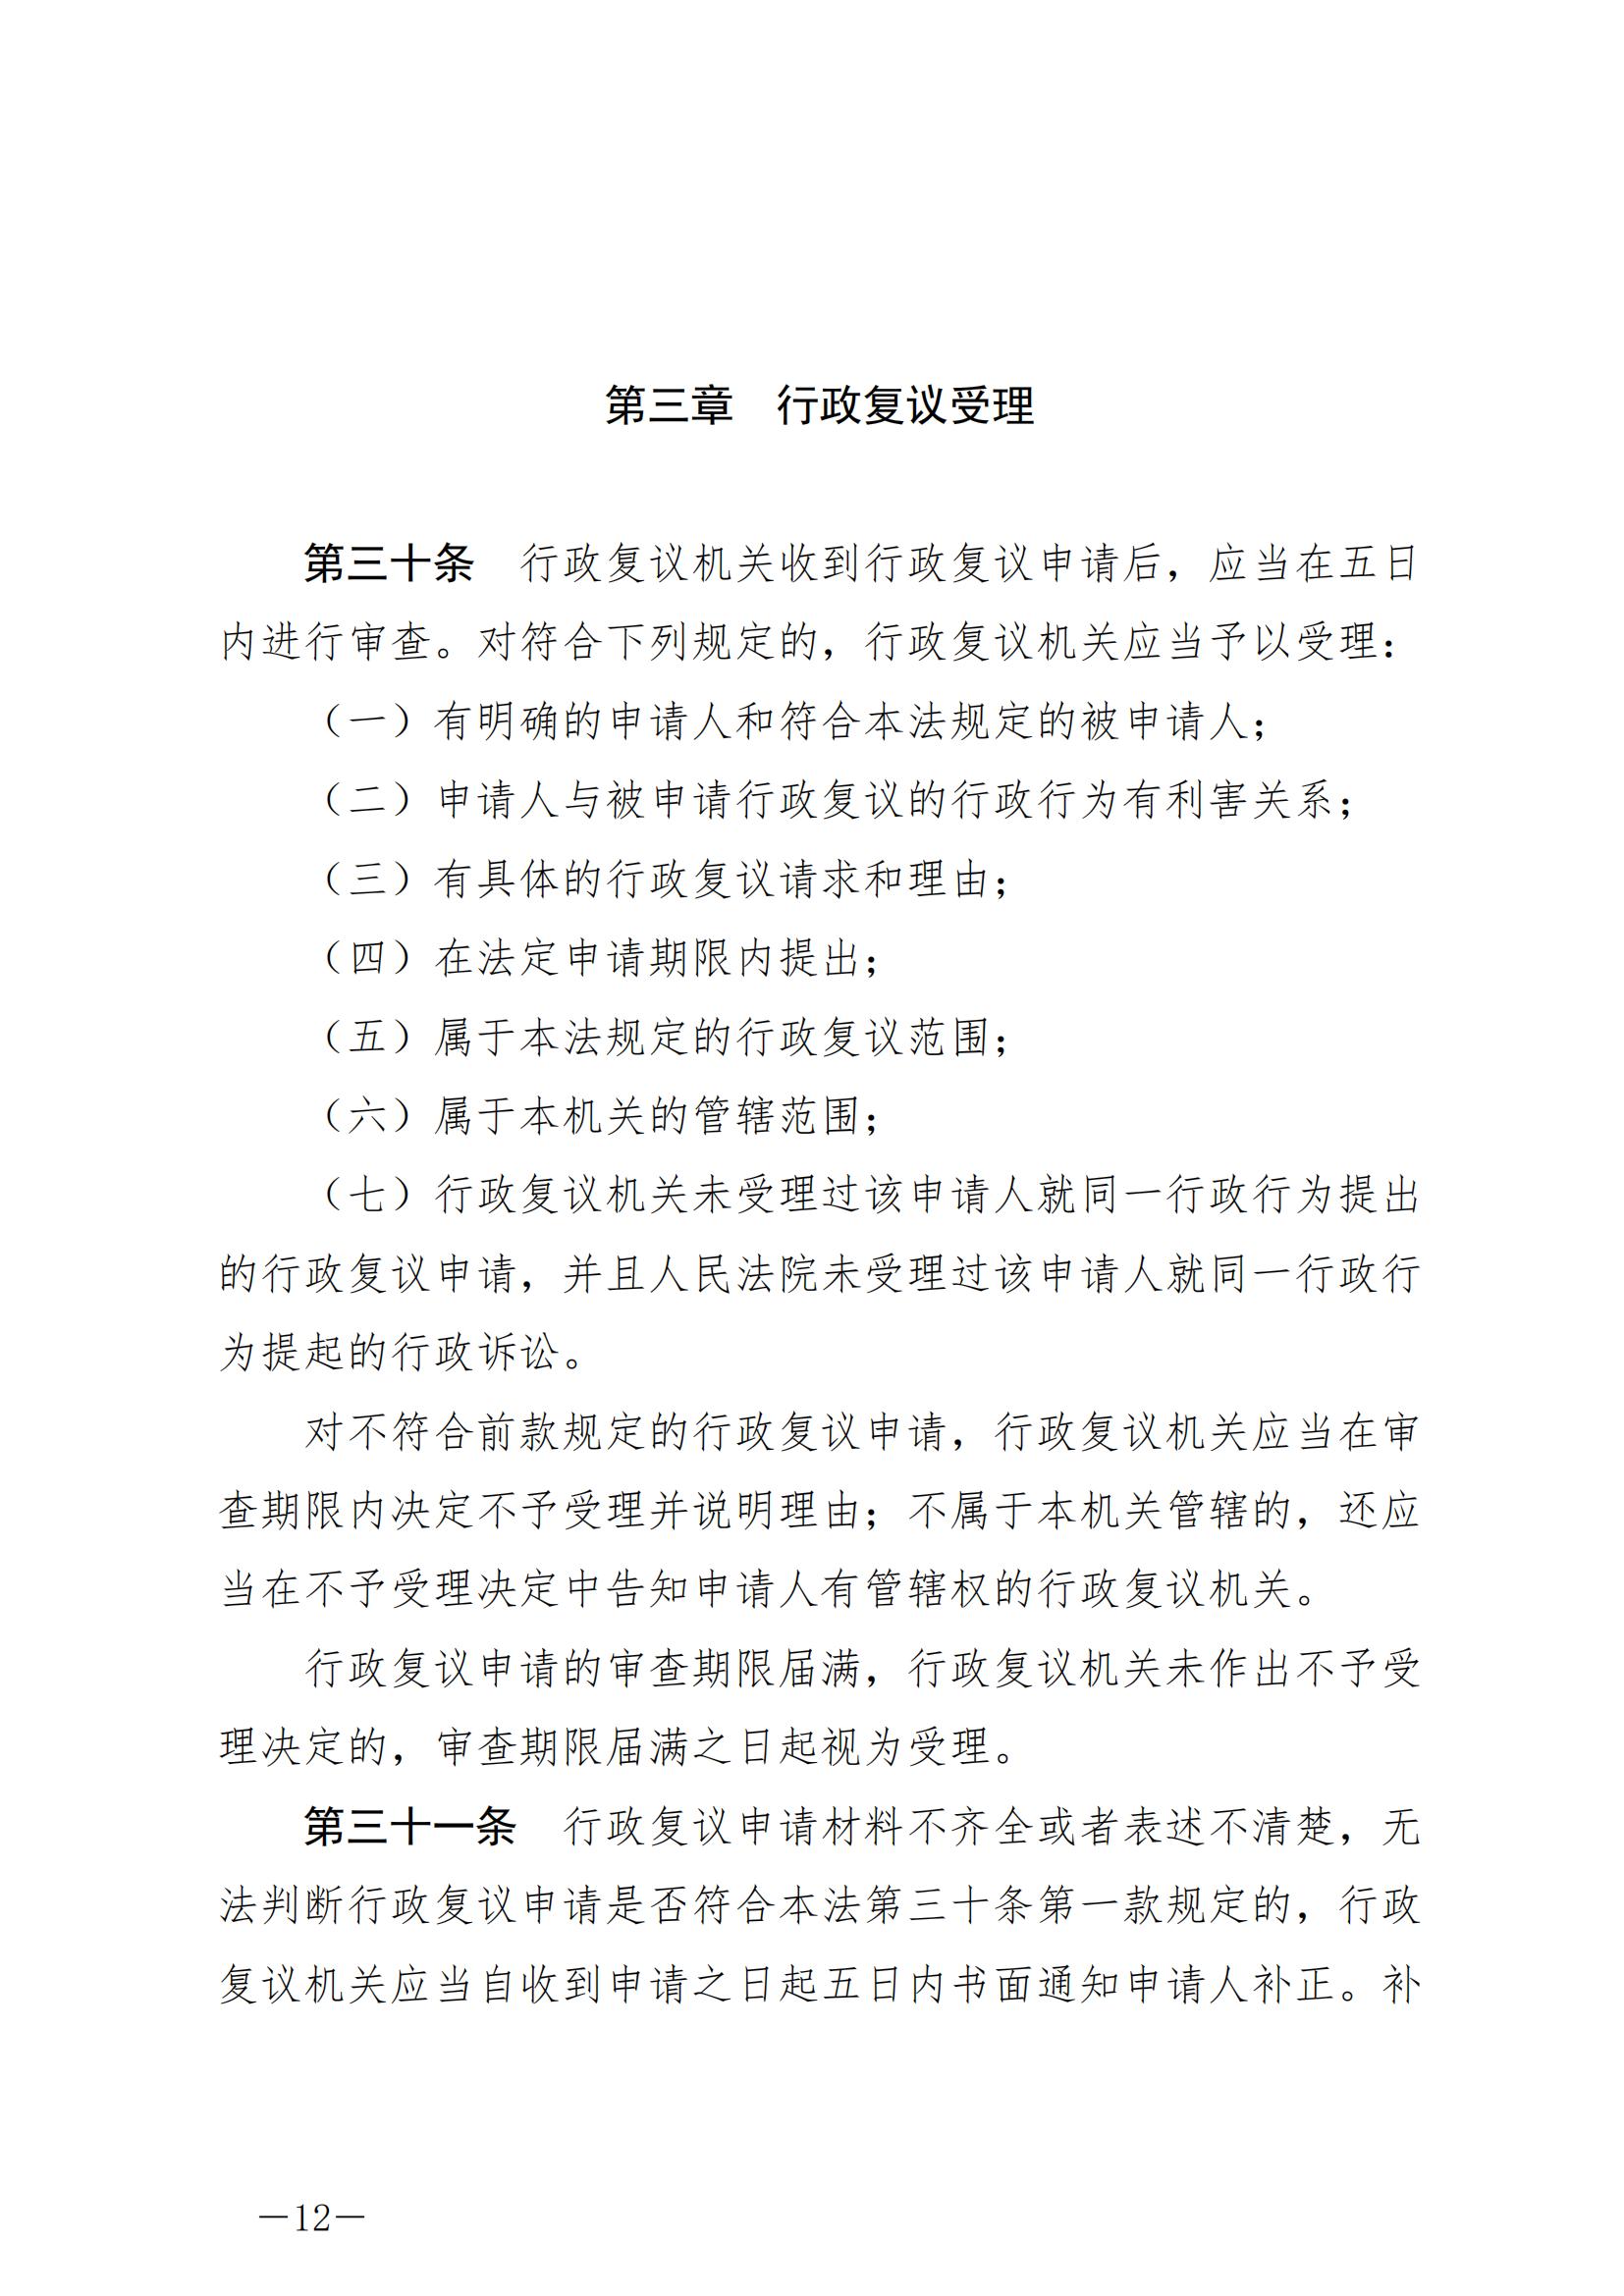 《中华人民共和国行政复议法》_20231204154310_11.jpg